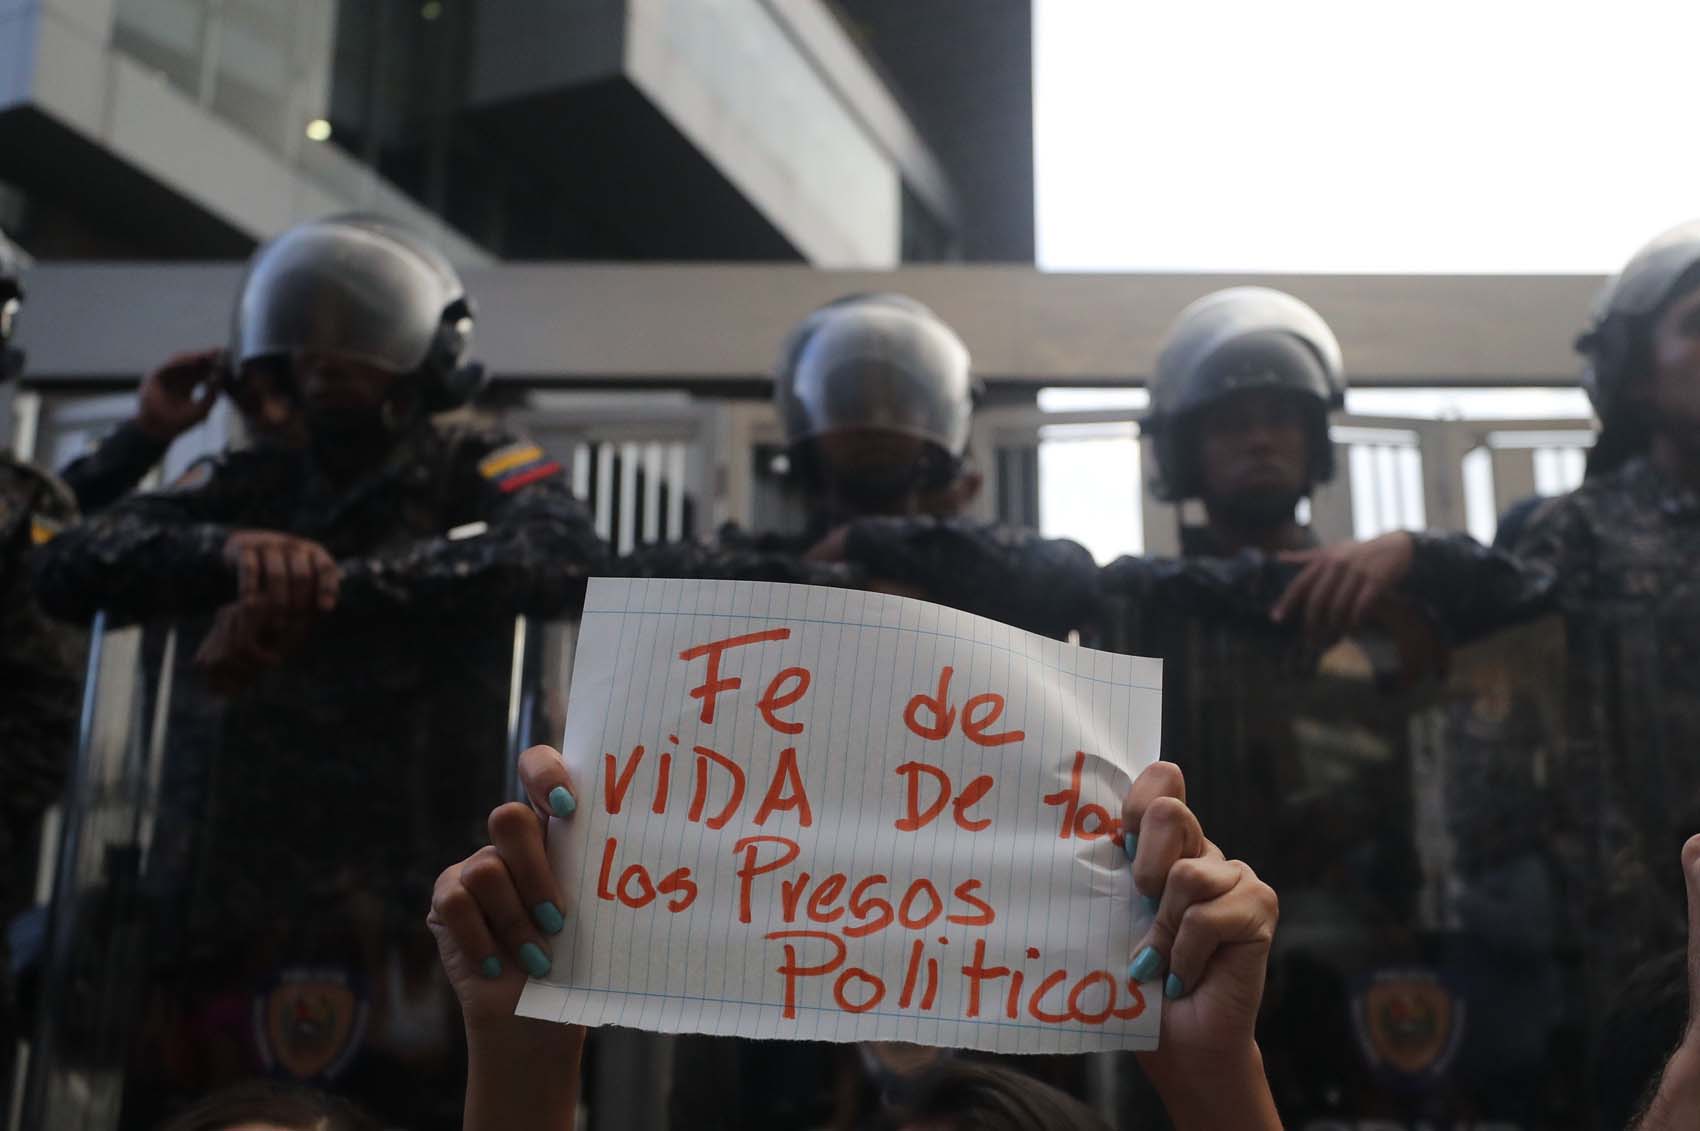 La revolución bolivariana, a la caza de tuiteros